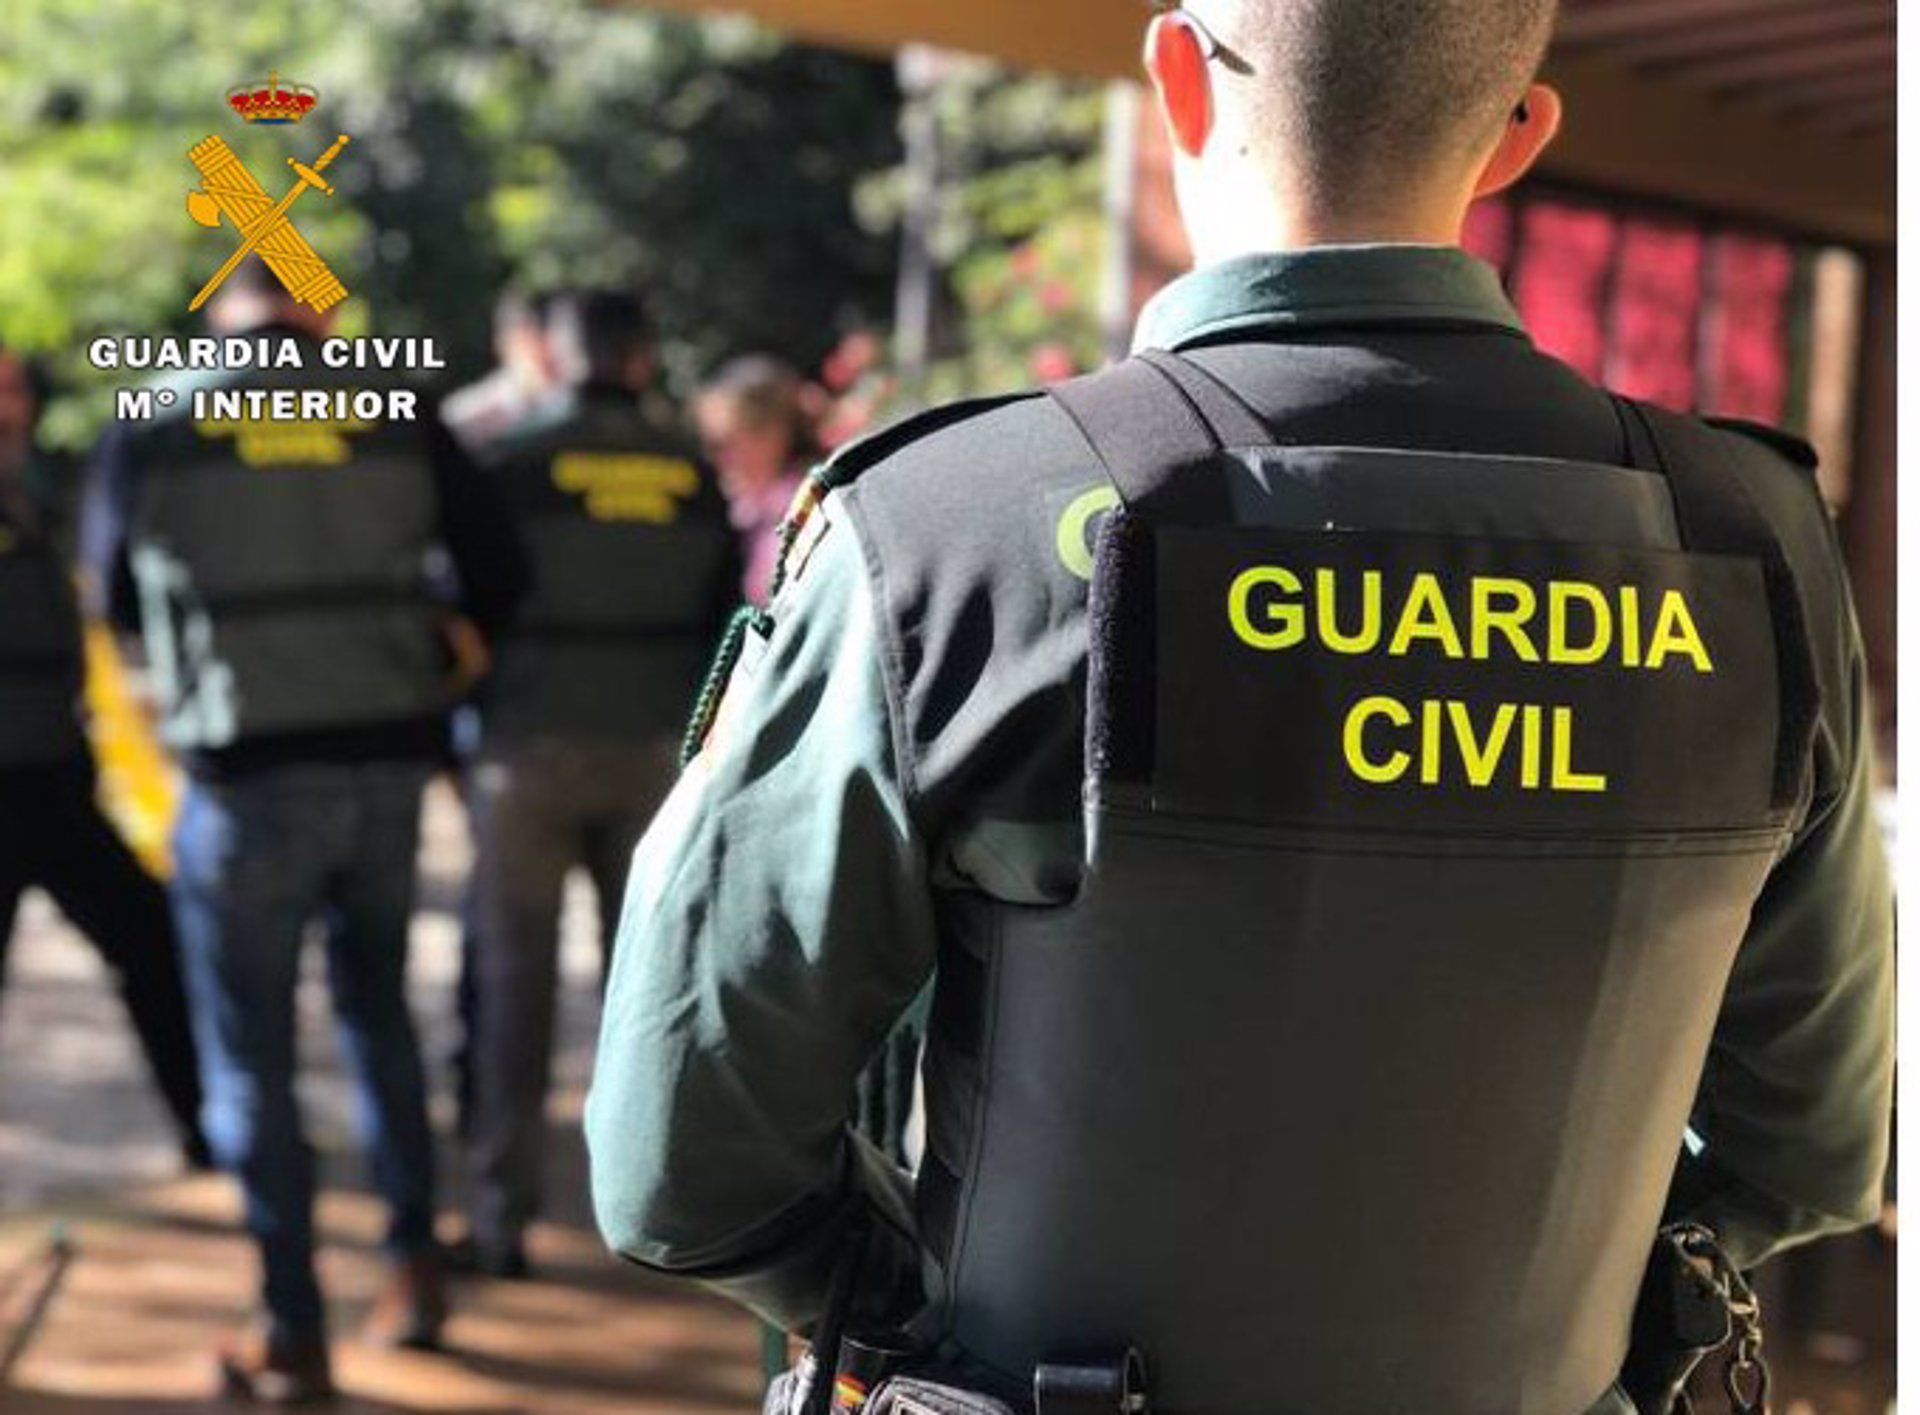 Localizadas más de cuatro toneladas de hachís en una operación antidroga en La Línea con tres detenidos. Agente de la Guardia Civil. - GUARDIA CIVIL.